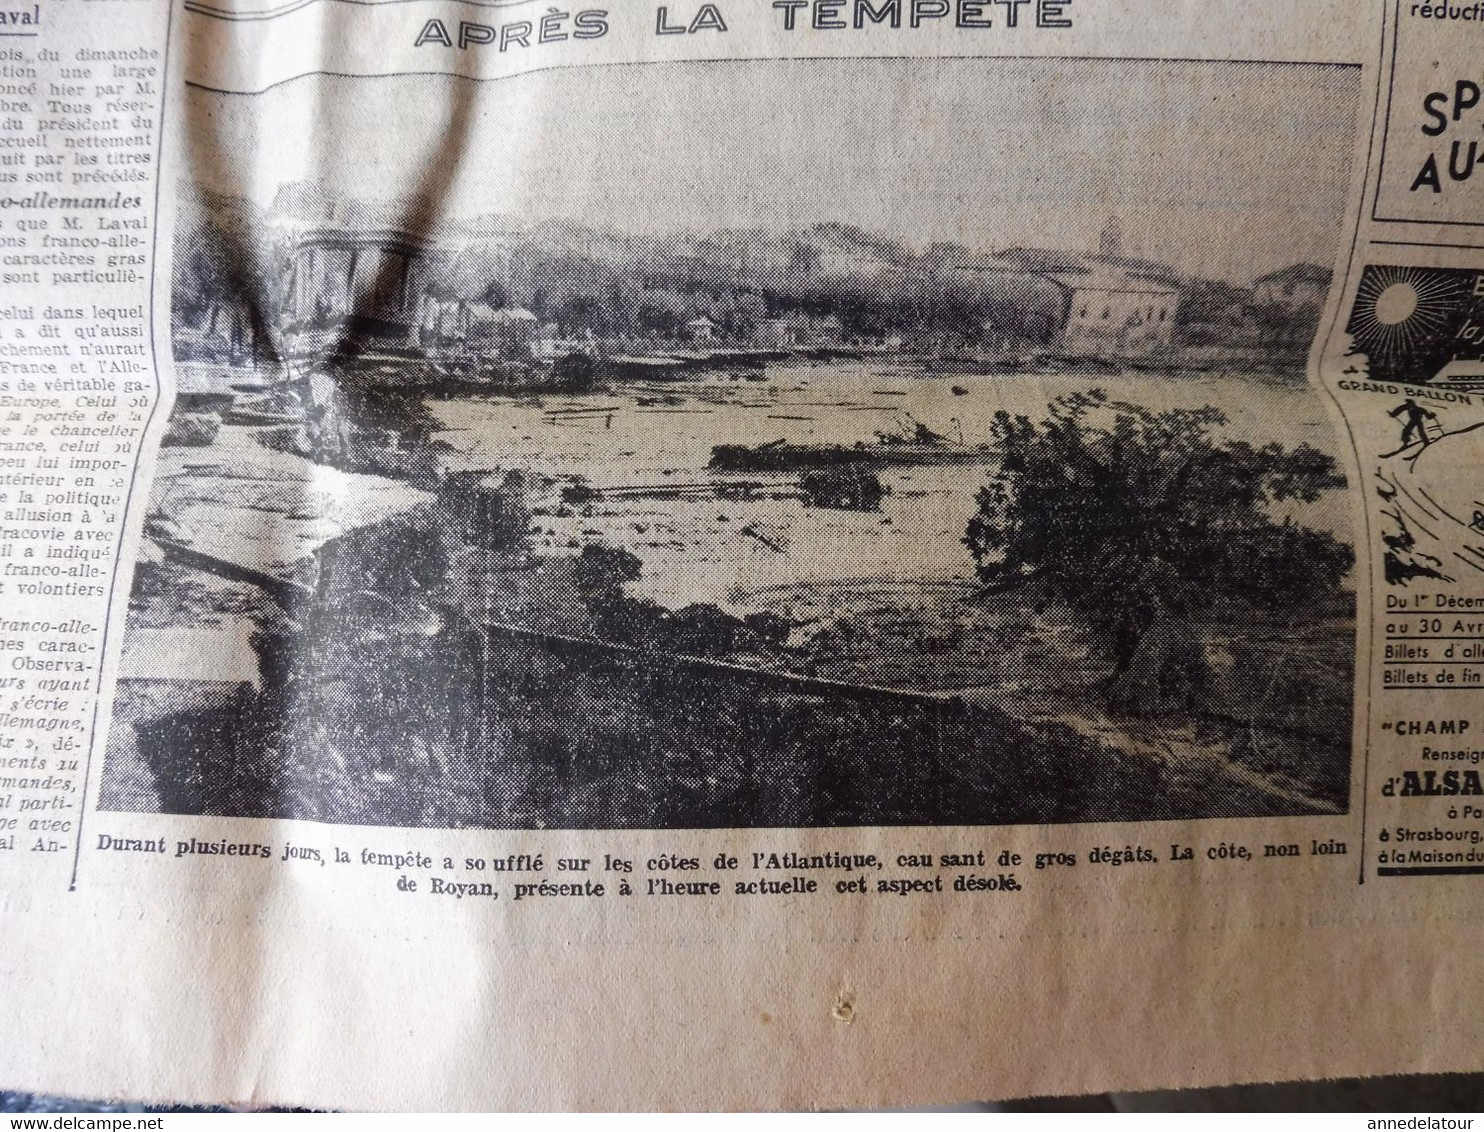 1935 L'AMI DU PEUPLE:  A. de Saint-Exupéry et Provost son mécano ;Fourvières ;Gaby Morlay en luge ;Scouts de France ;etc